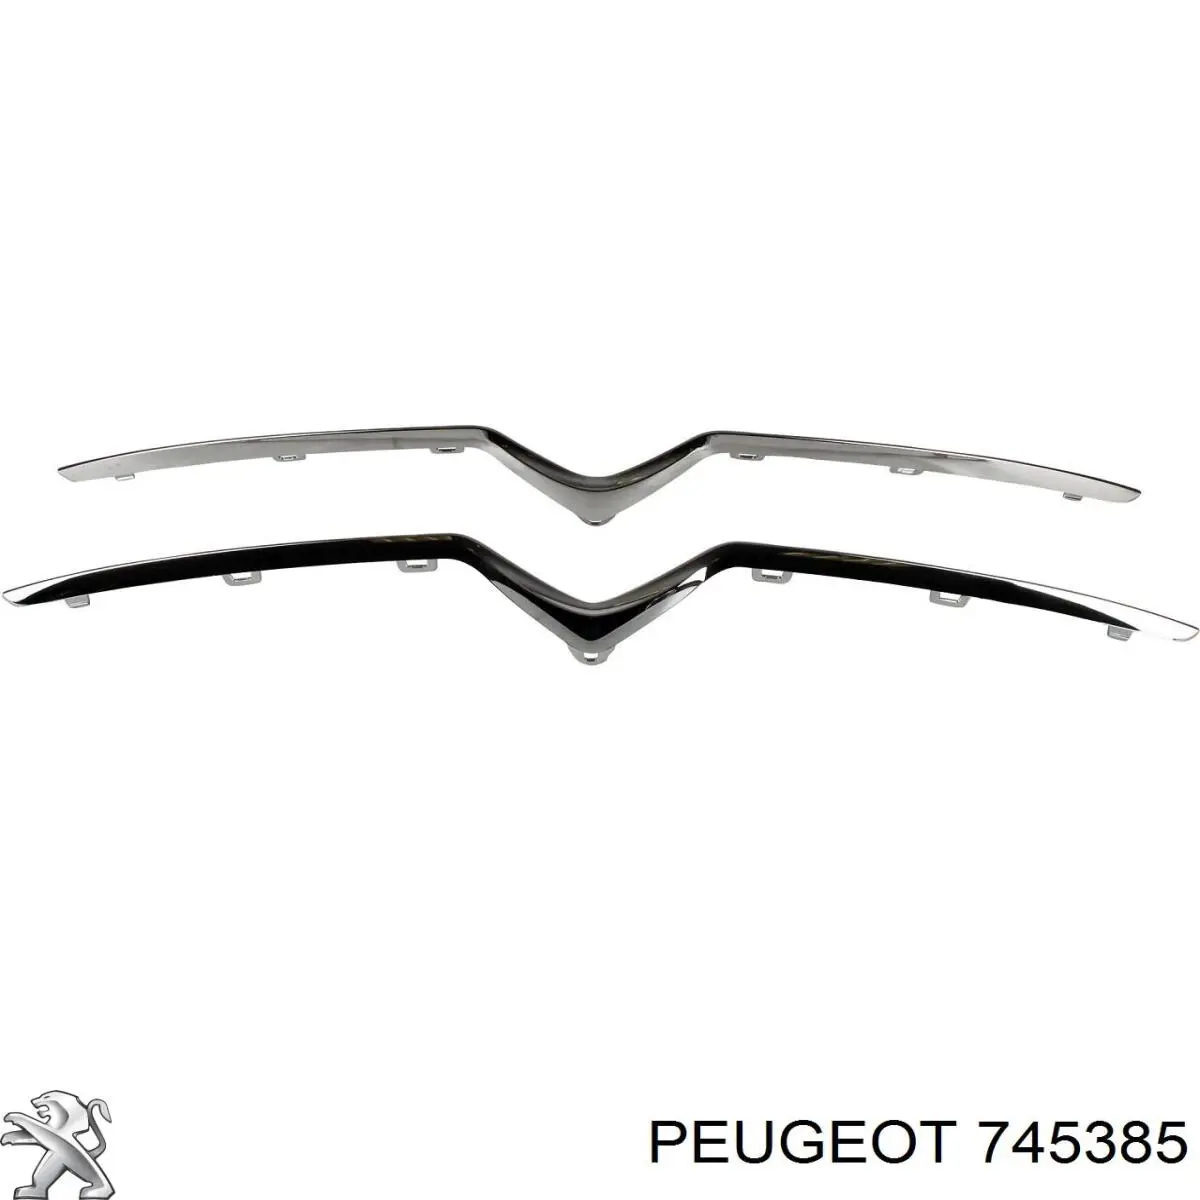 Moldura de rejilla de radiador 745385 Peugeot/Citroen